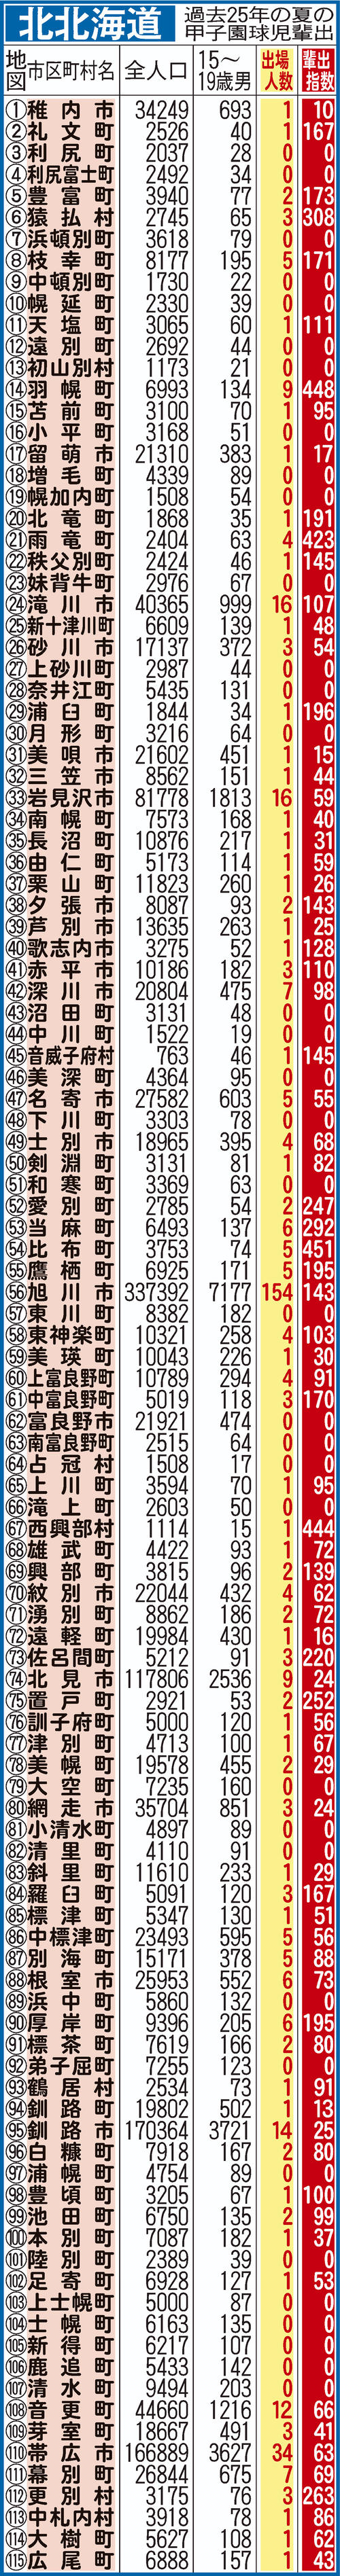 過去25年間における北北海道地域別の甲子園輩出指数